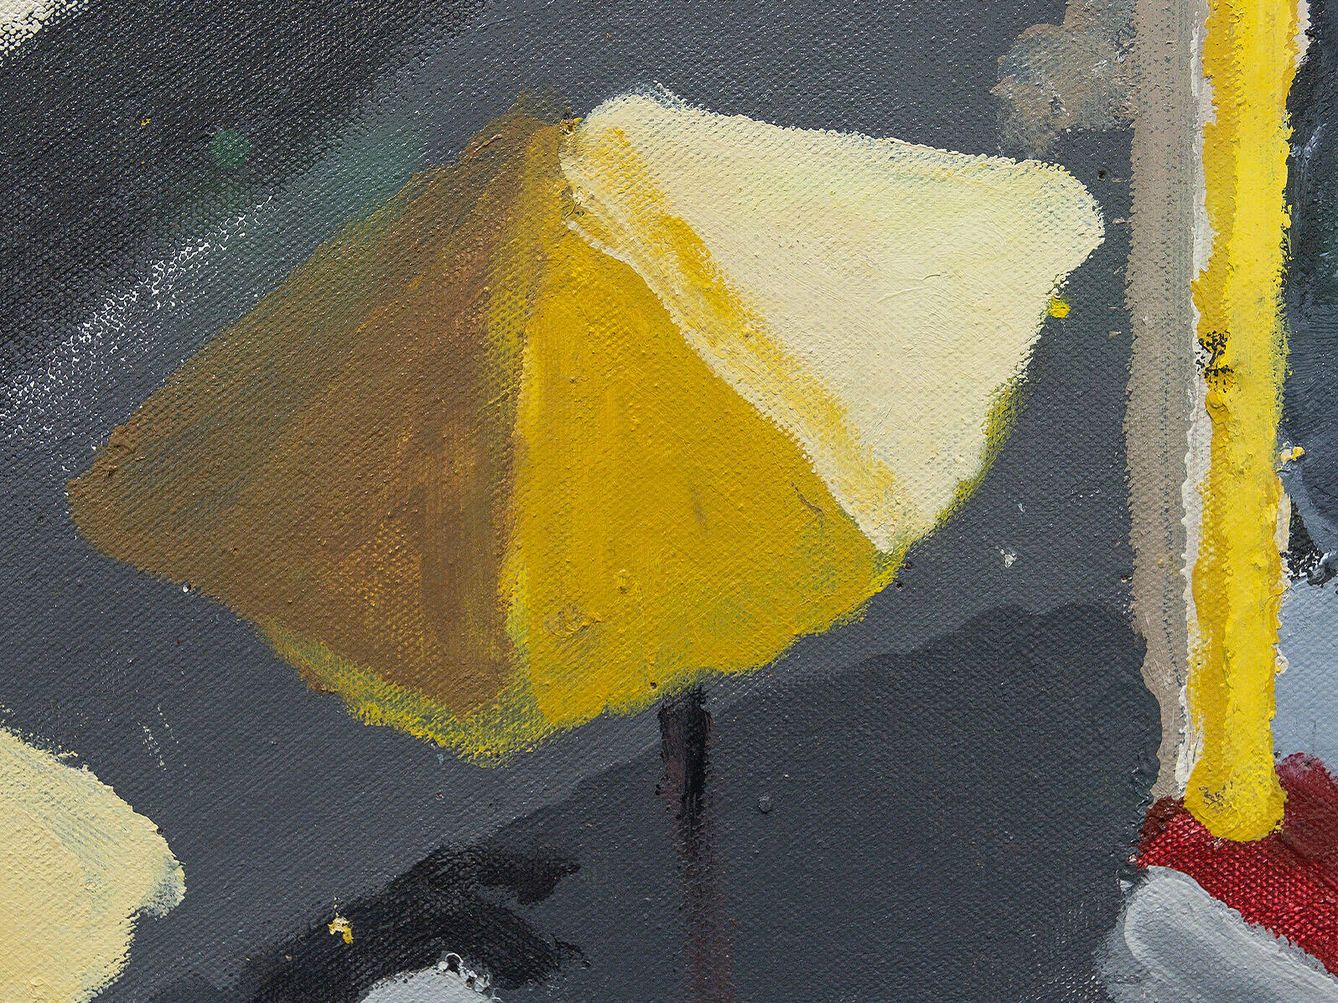 'Heliplaza (díptico)', 2021, de Manuel Solano. Galería Peres Projects Berlín. (M. G. O.)